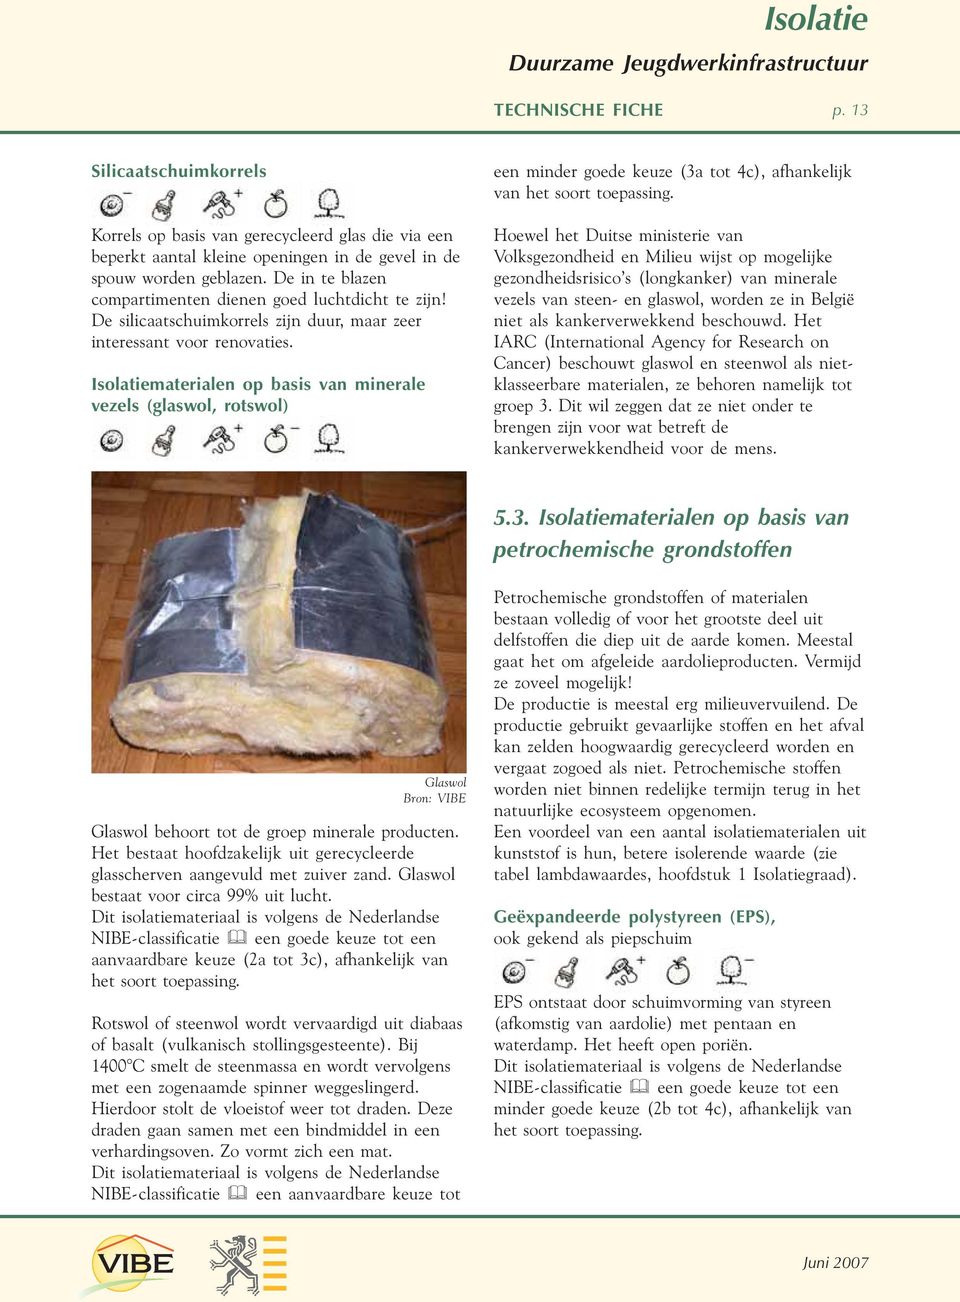 Isolatiematerialen op basis van minerale vezels (glaswol, rotswol) een minder goede keuze (3a tot 4c), afhankelijk van het soort toepassing.